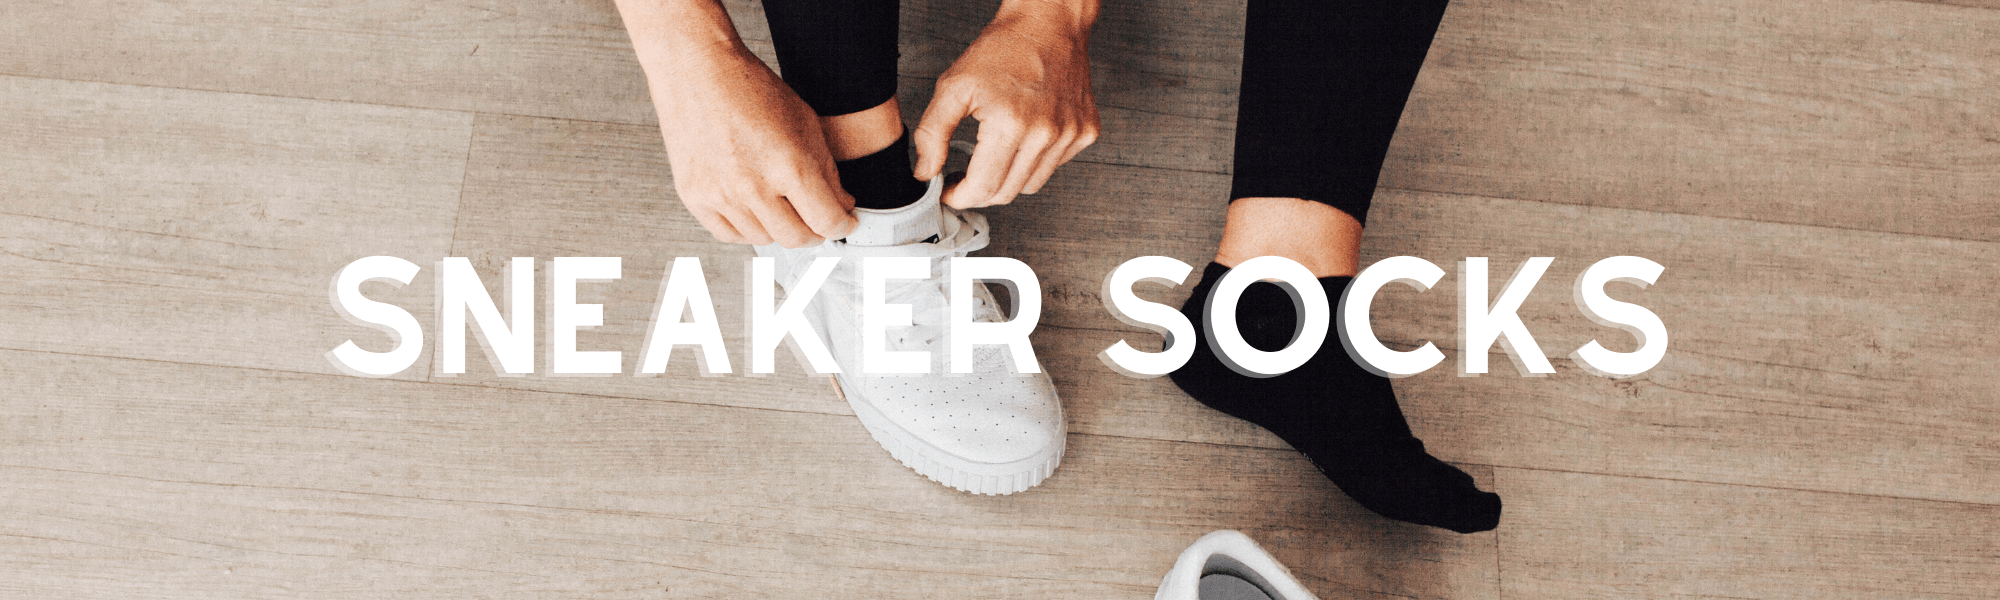 Merino Wool Sneaker Socks, Woman